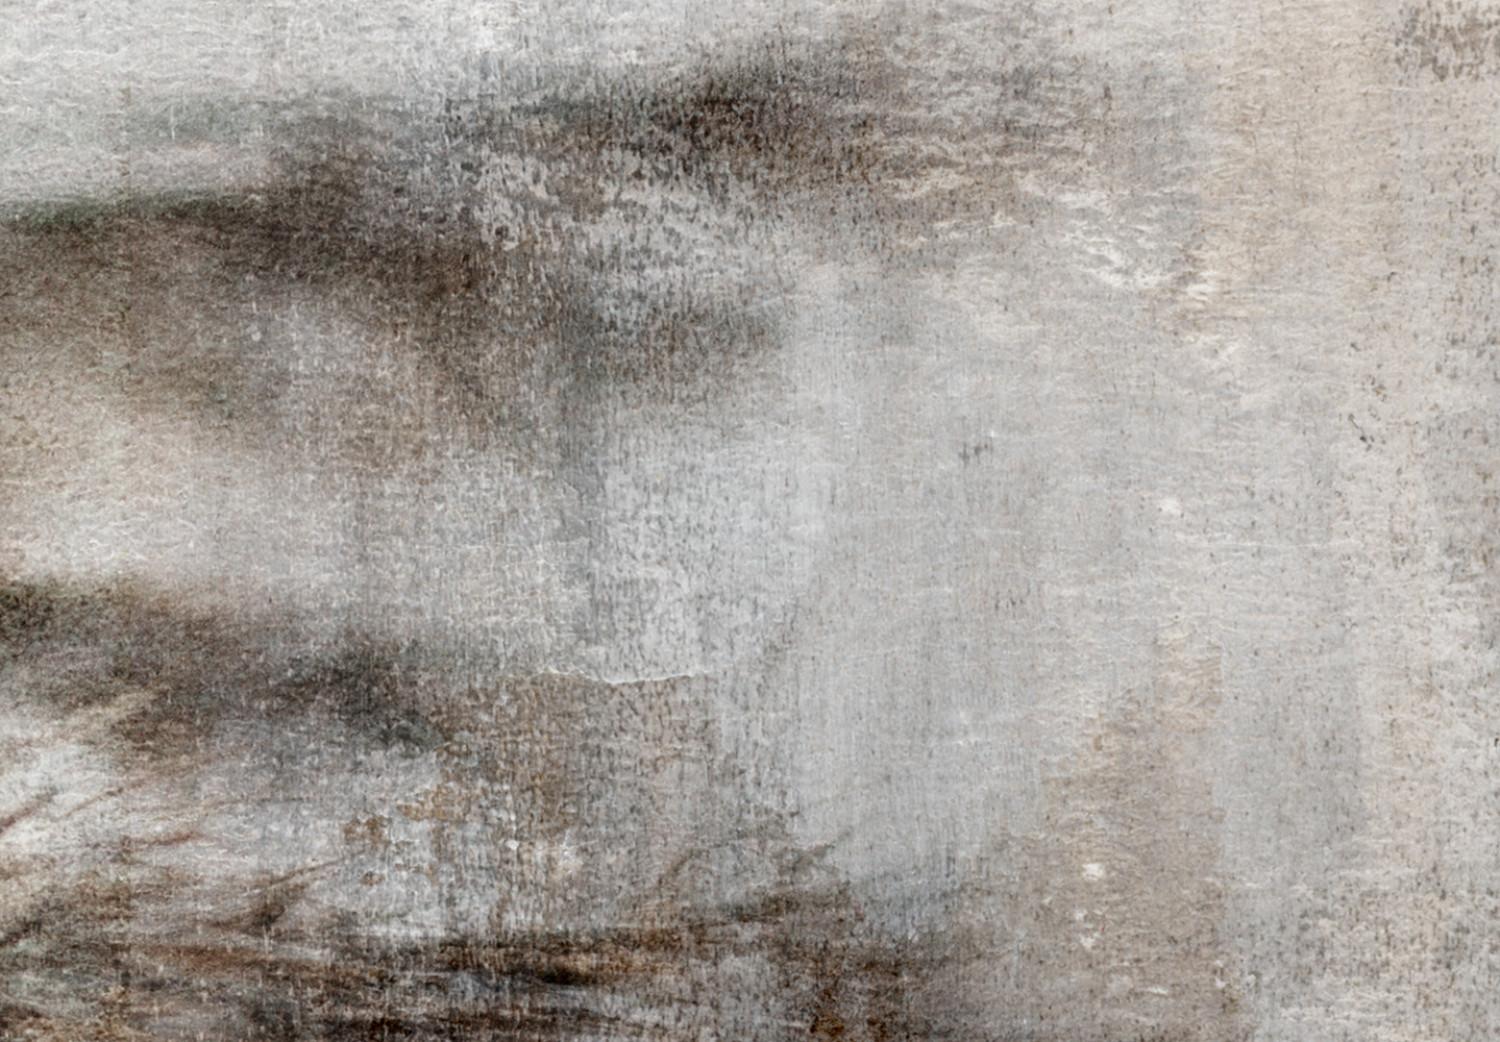 Cuadro Rama seca - composición gris y beige en estilo shabby chic